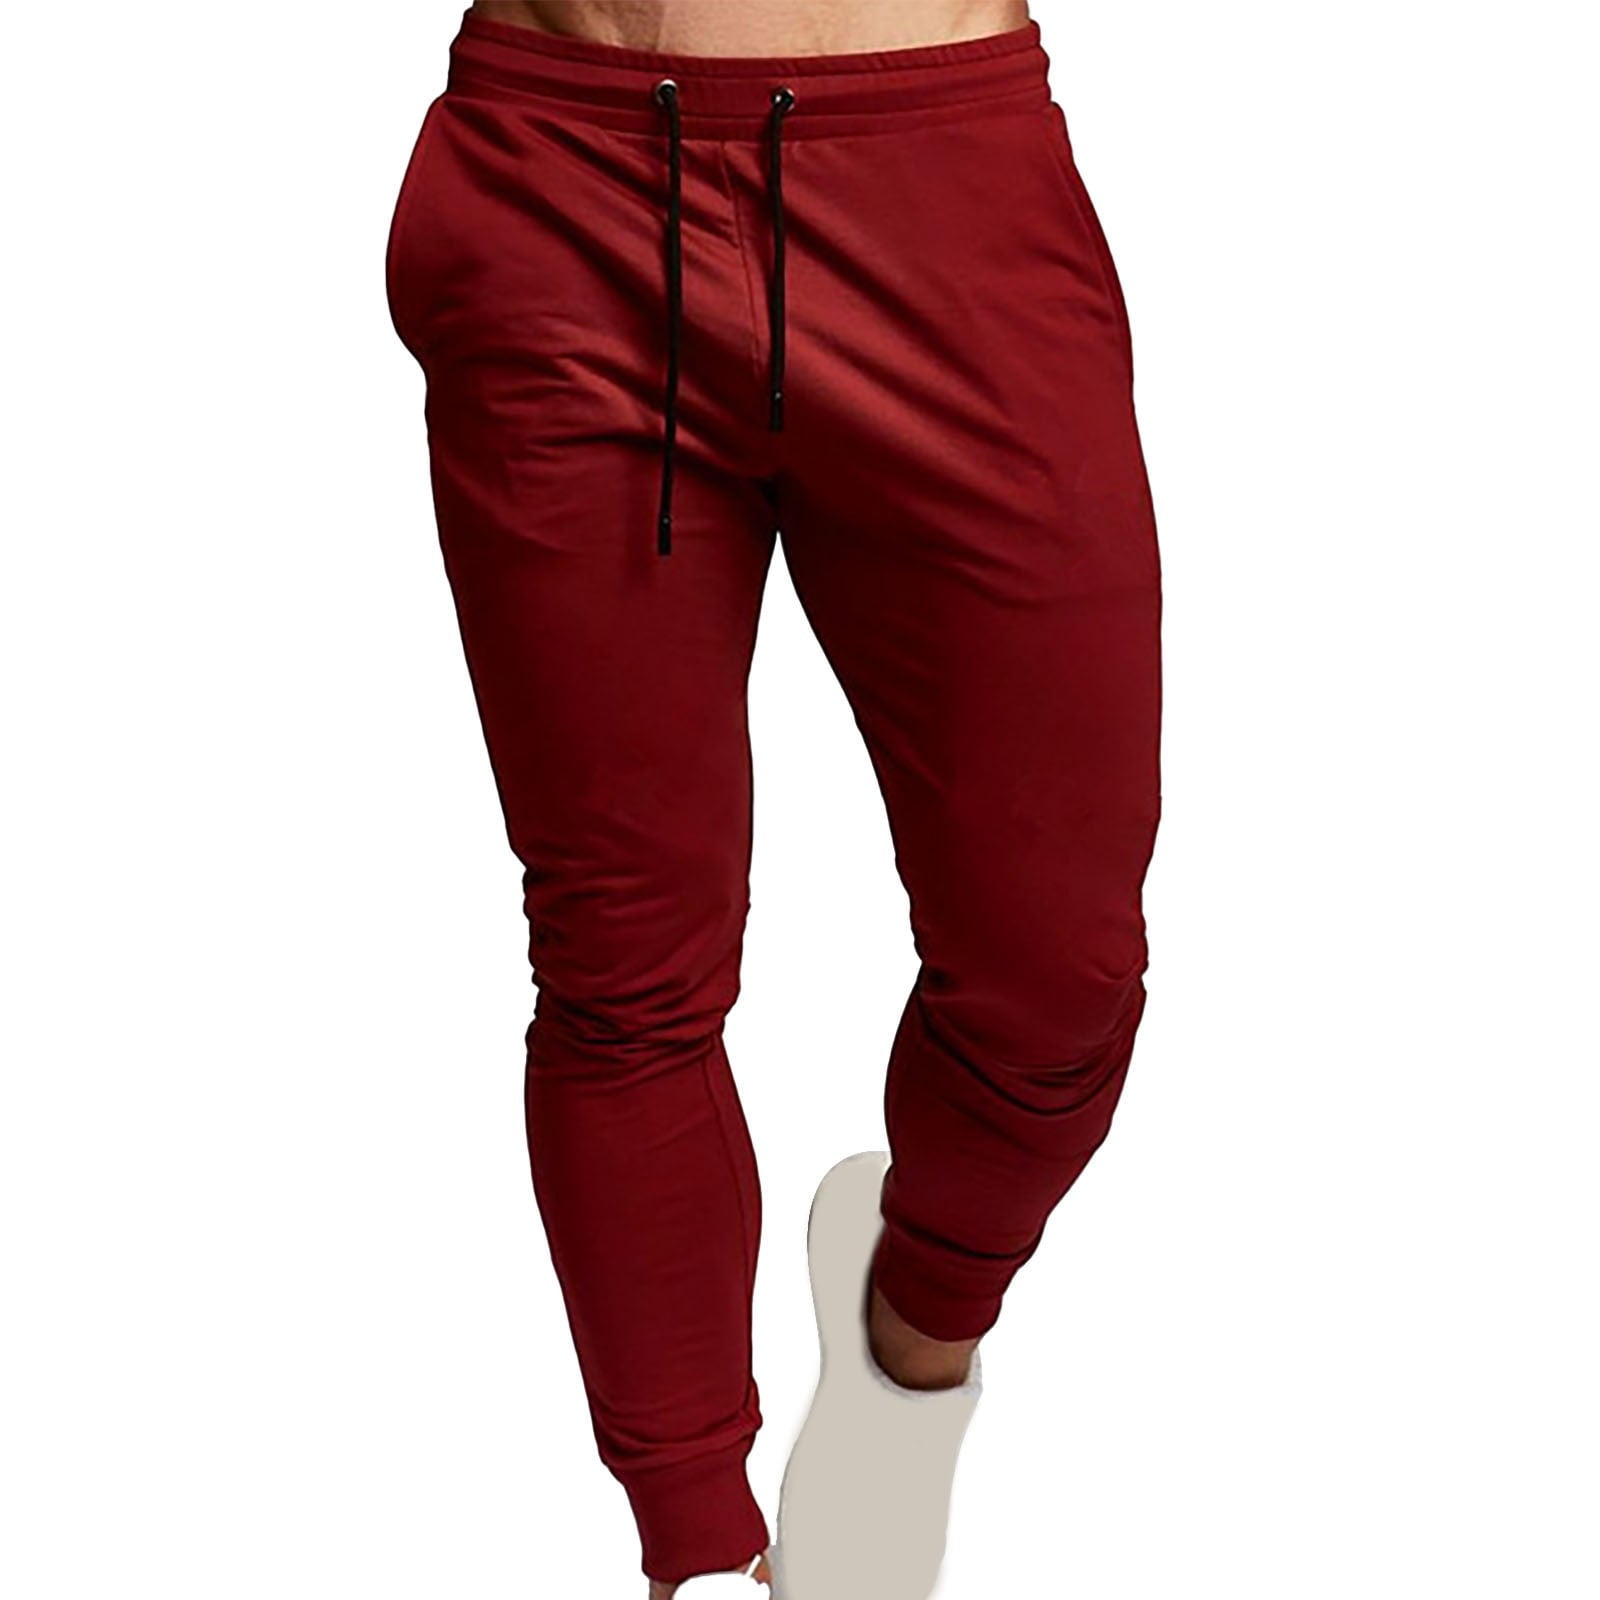 Lroveb Men's Sports Pants Casual Pants Men's Solid Color Versatile ...